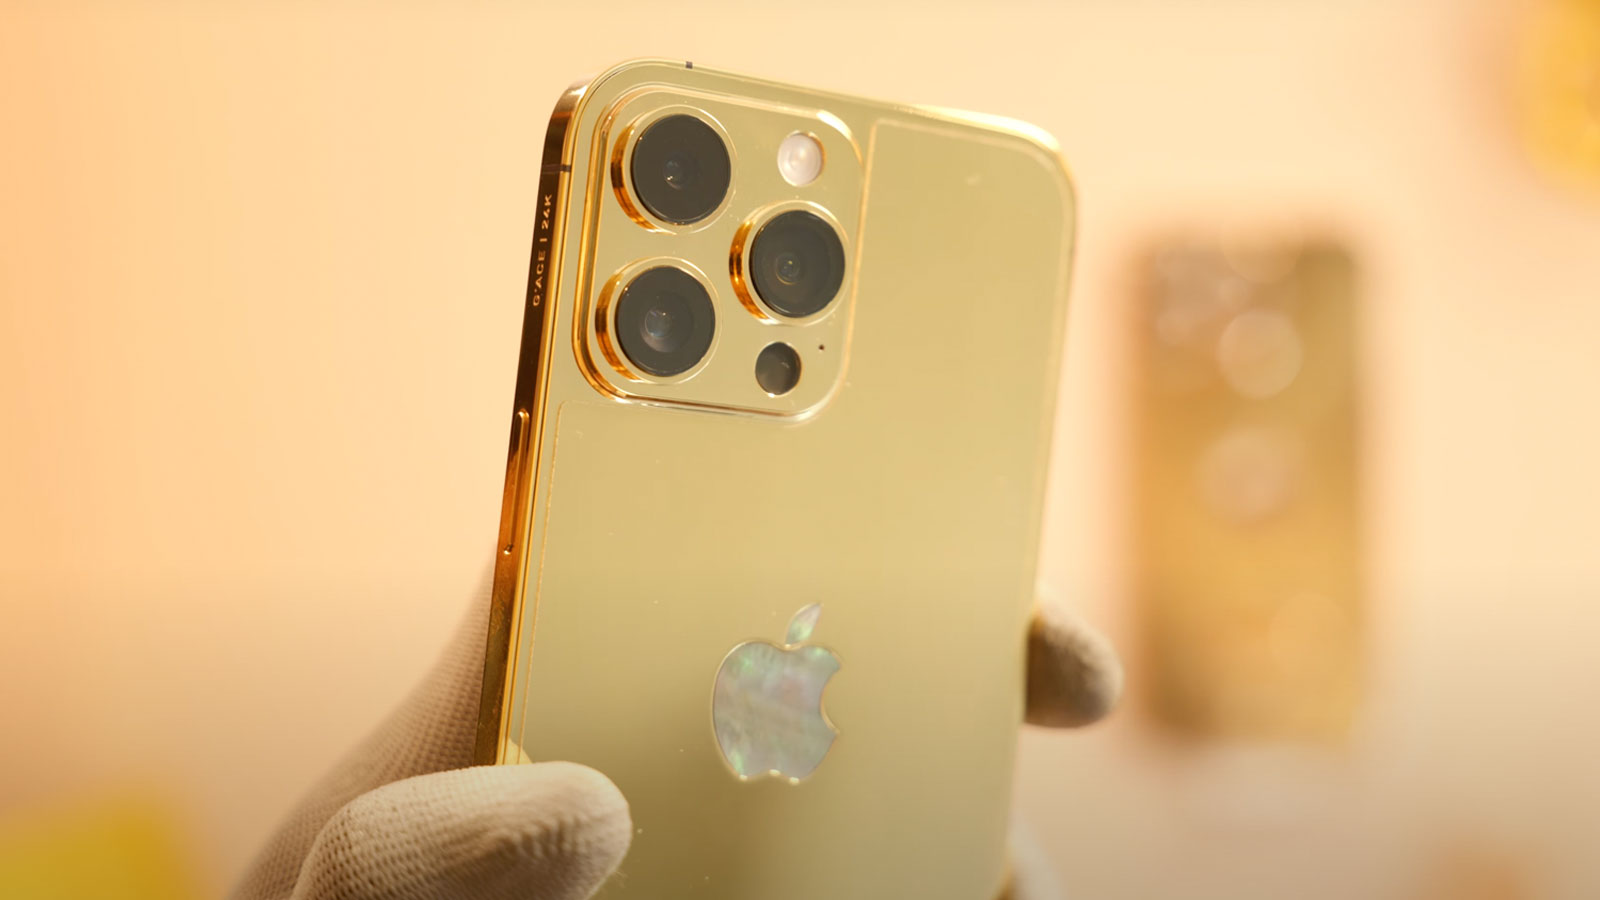 Cùng tìm hiểu chi tiết về iPhone 14 Pro Max mạ vàng, kim cương, giá 200 triệu, mang đến cho bạn những trải nghiệm khác biệt và vô cùng thú vị cùng với thế giới của nghệ thuật điện thoại di động.